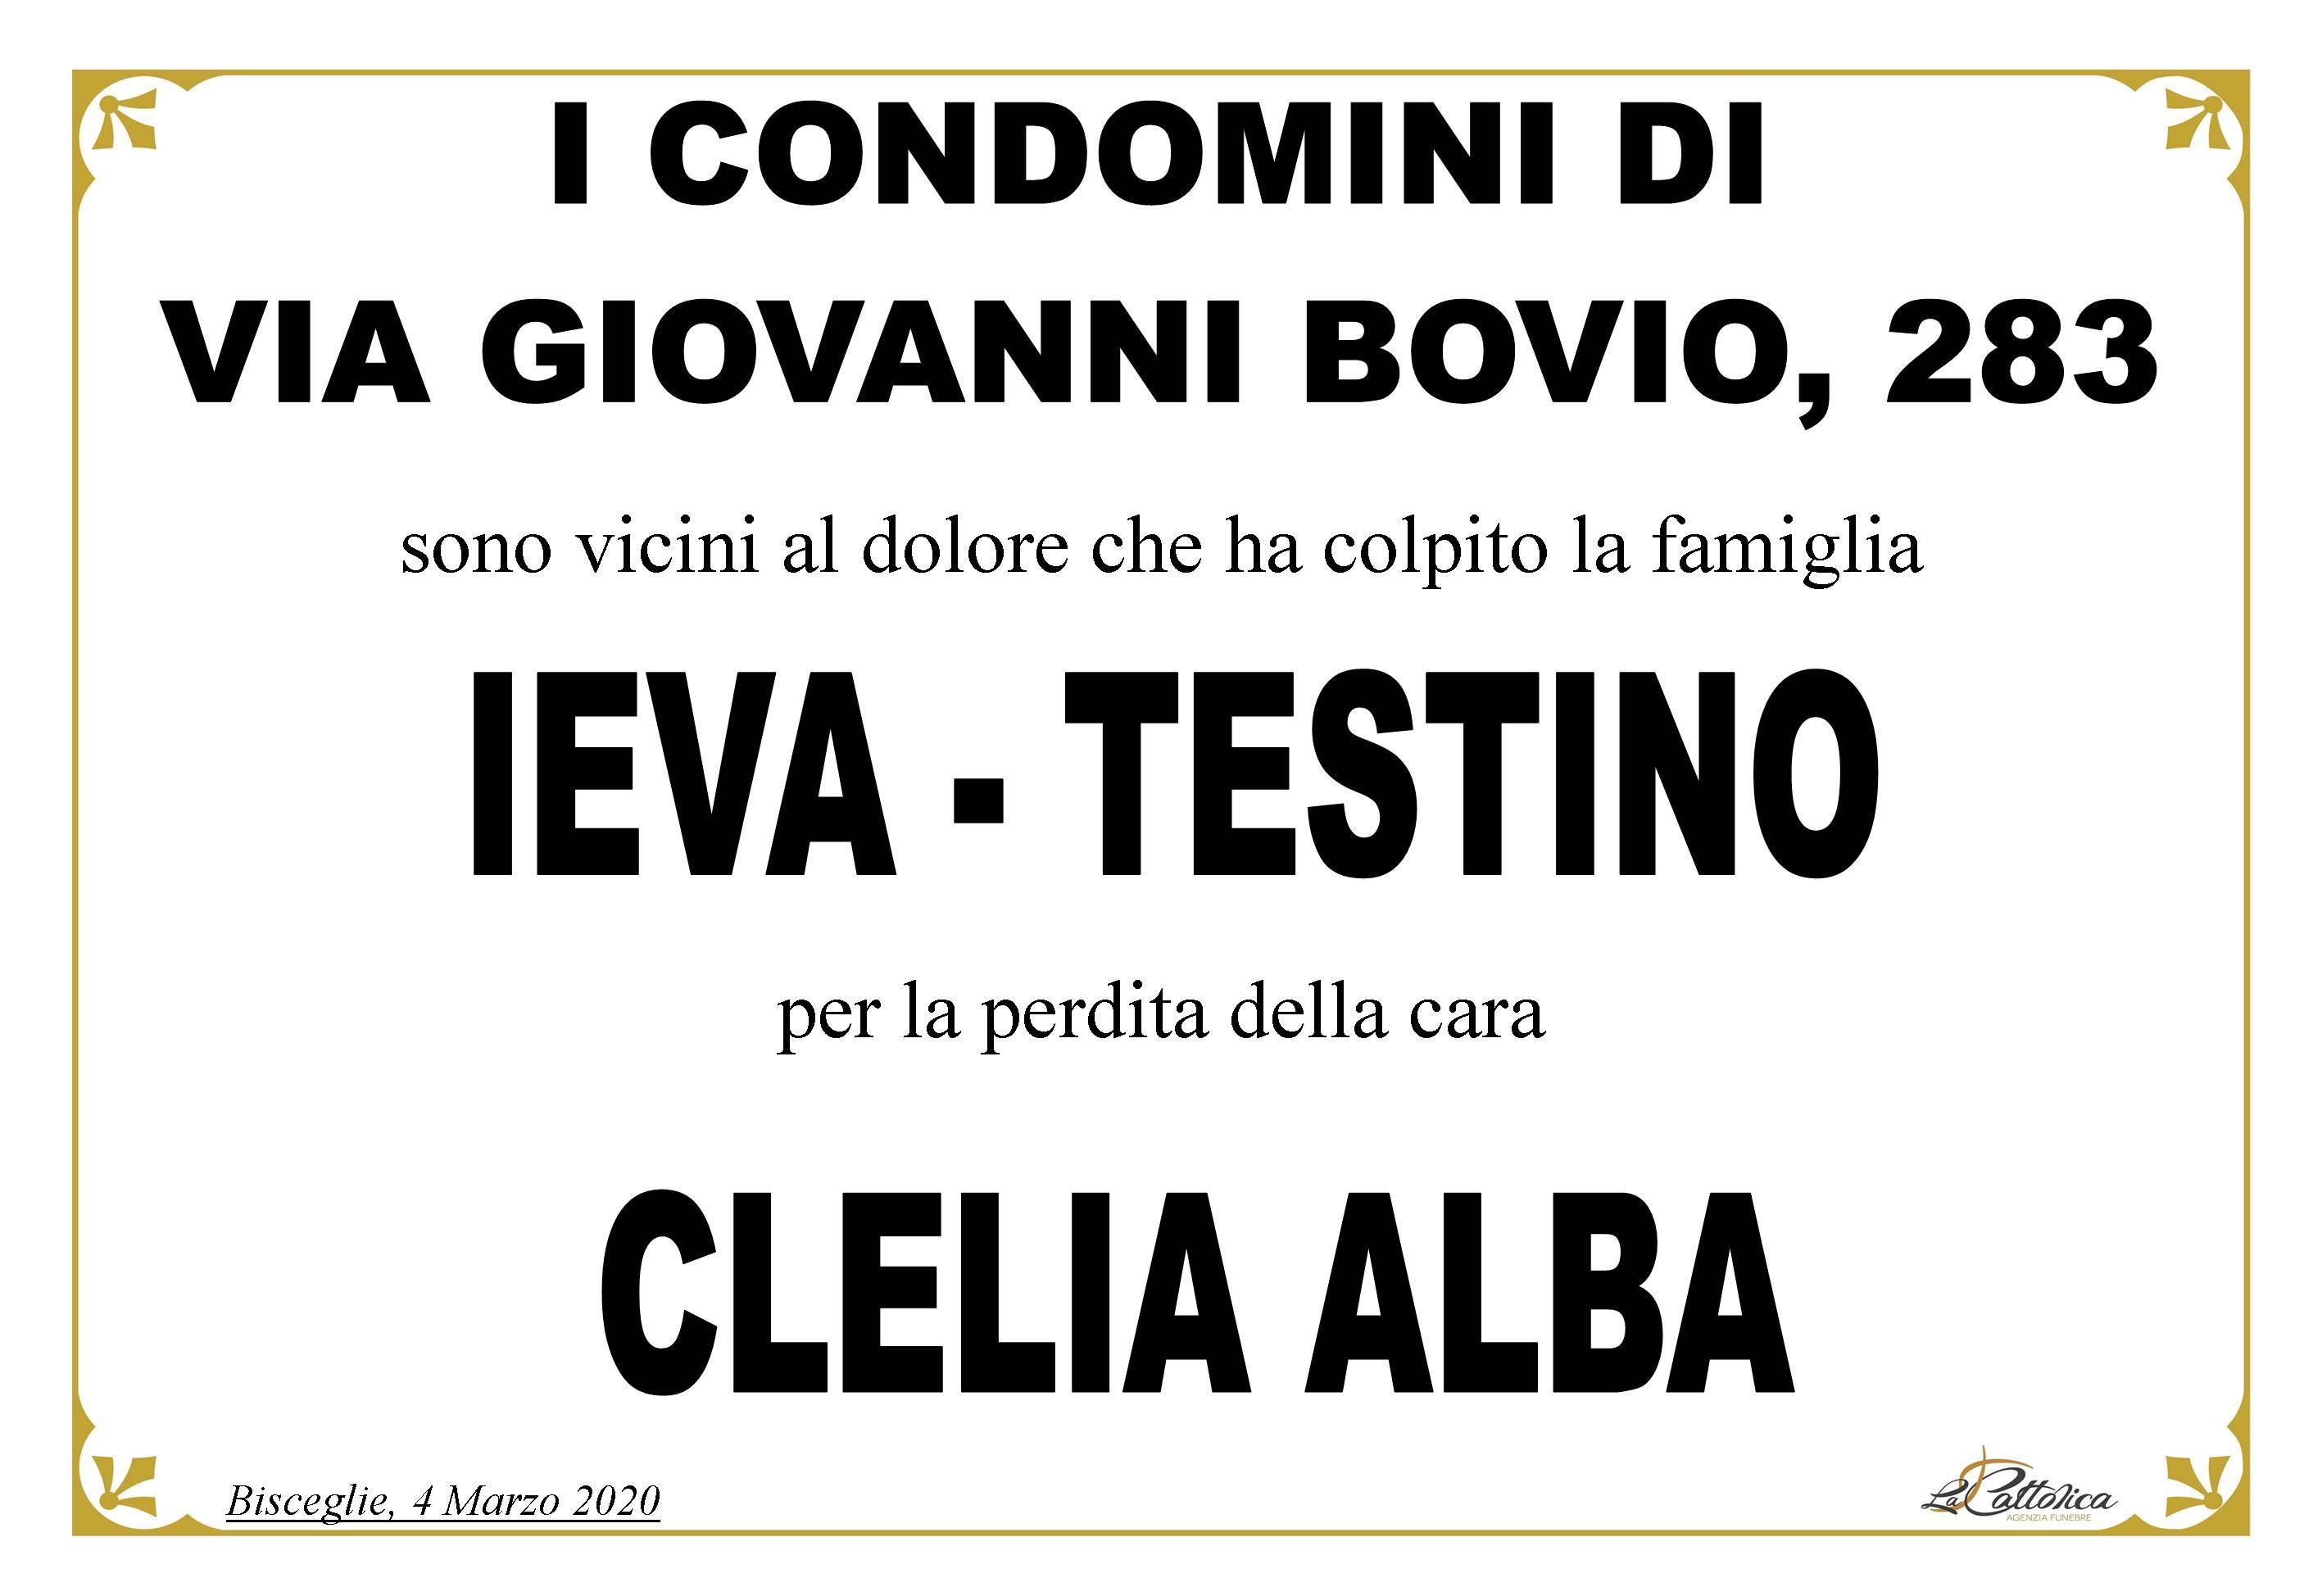 "I Condomini di Via Giovanni Bovio 283"